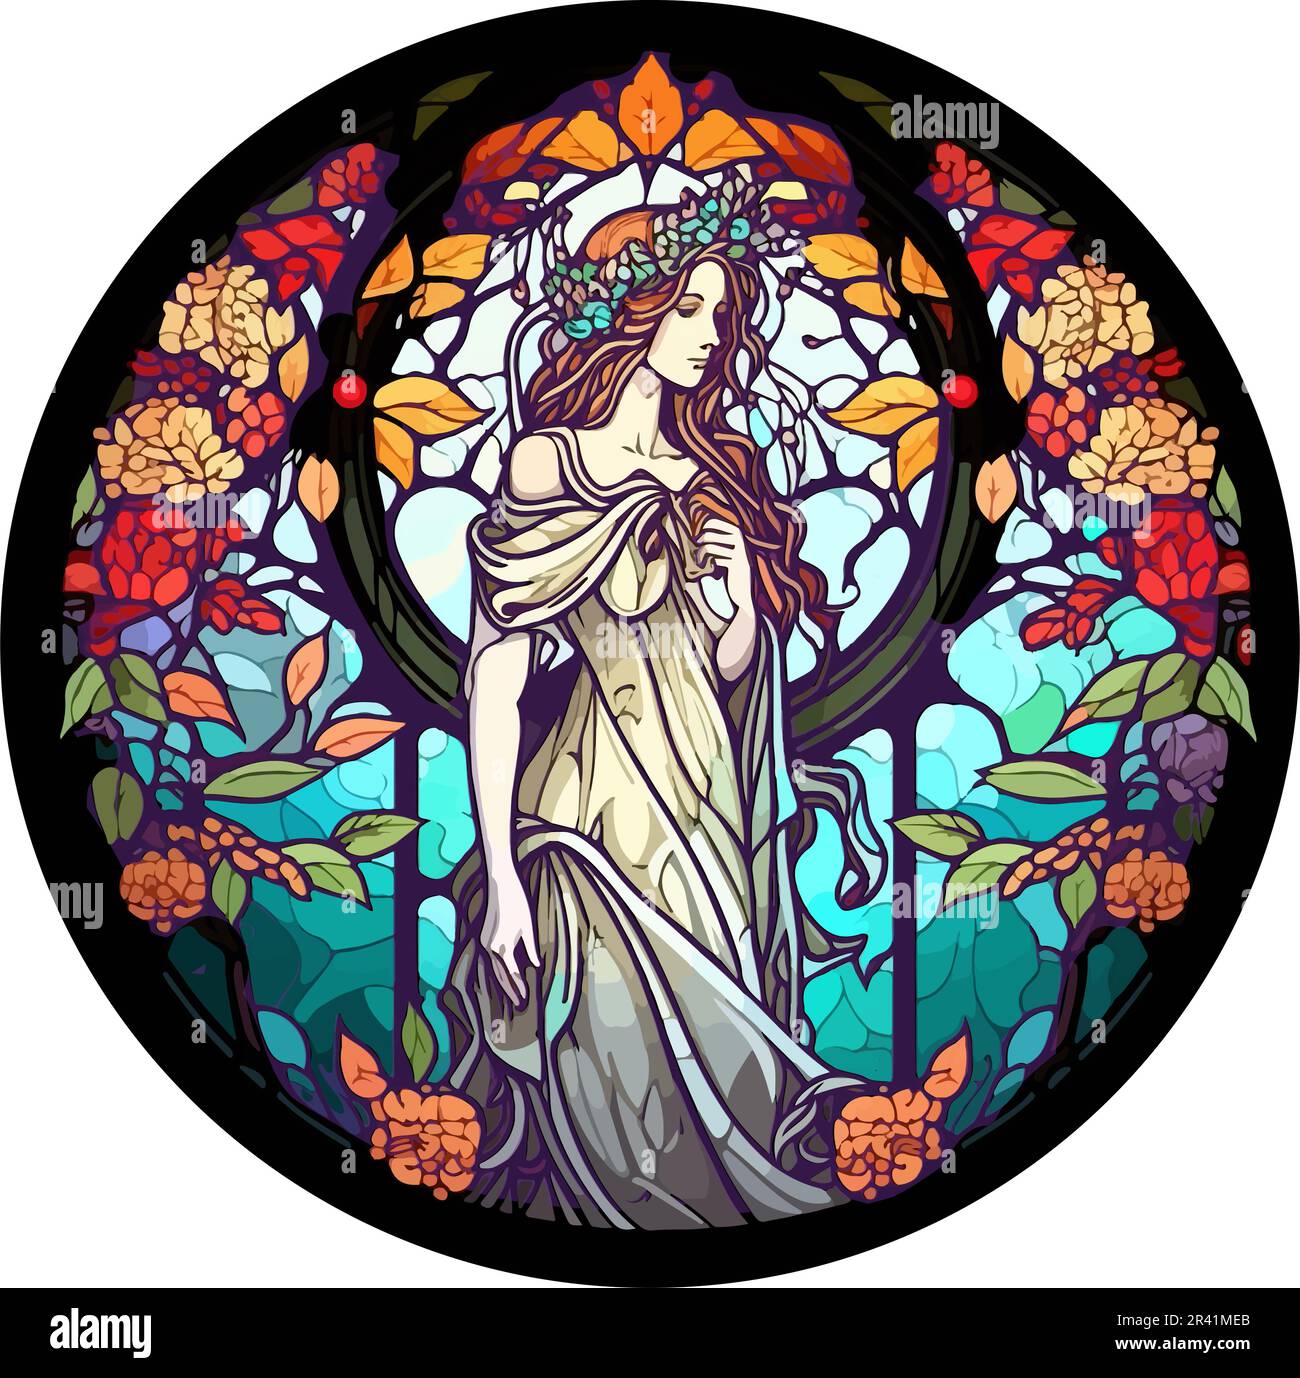 Vecteur de la déesse grecque Persephone avec motif floral, fenêtre ronde en vitraux Illustration de Vecteur